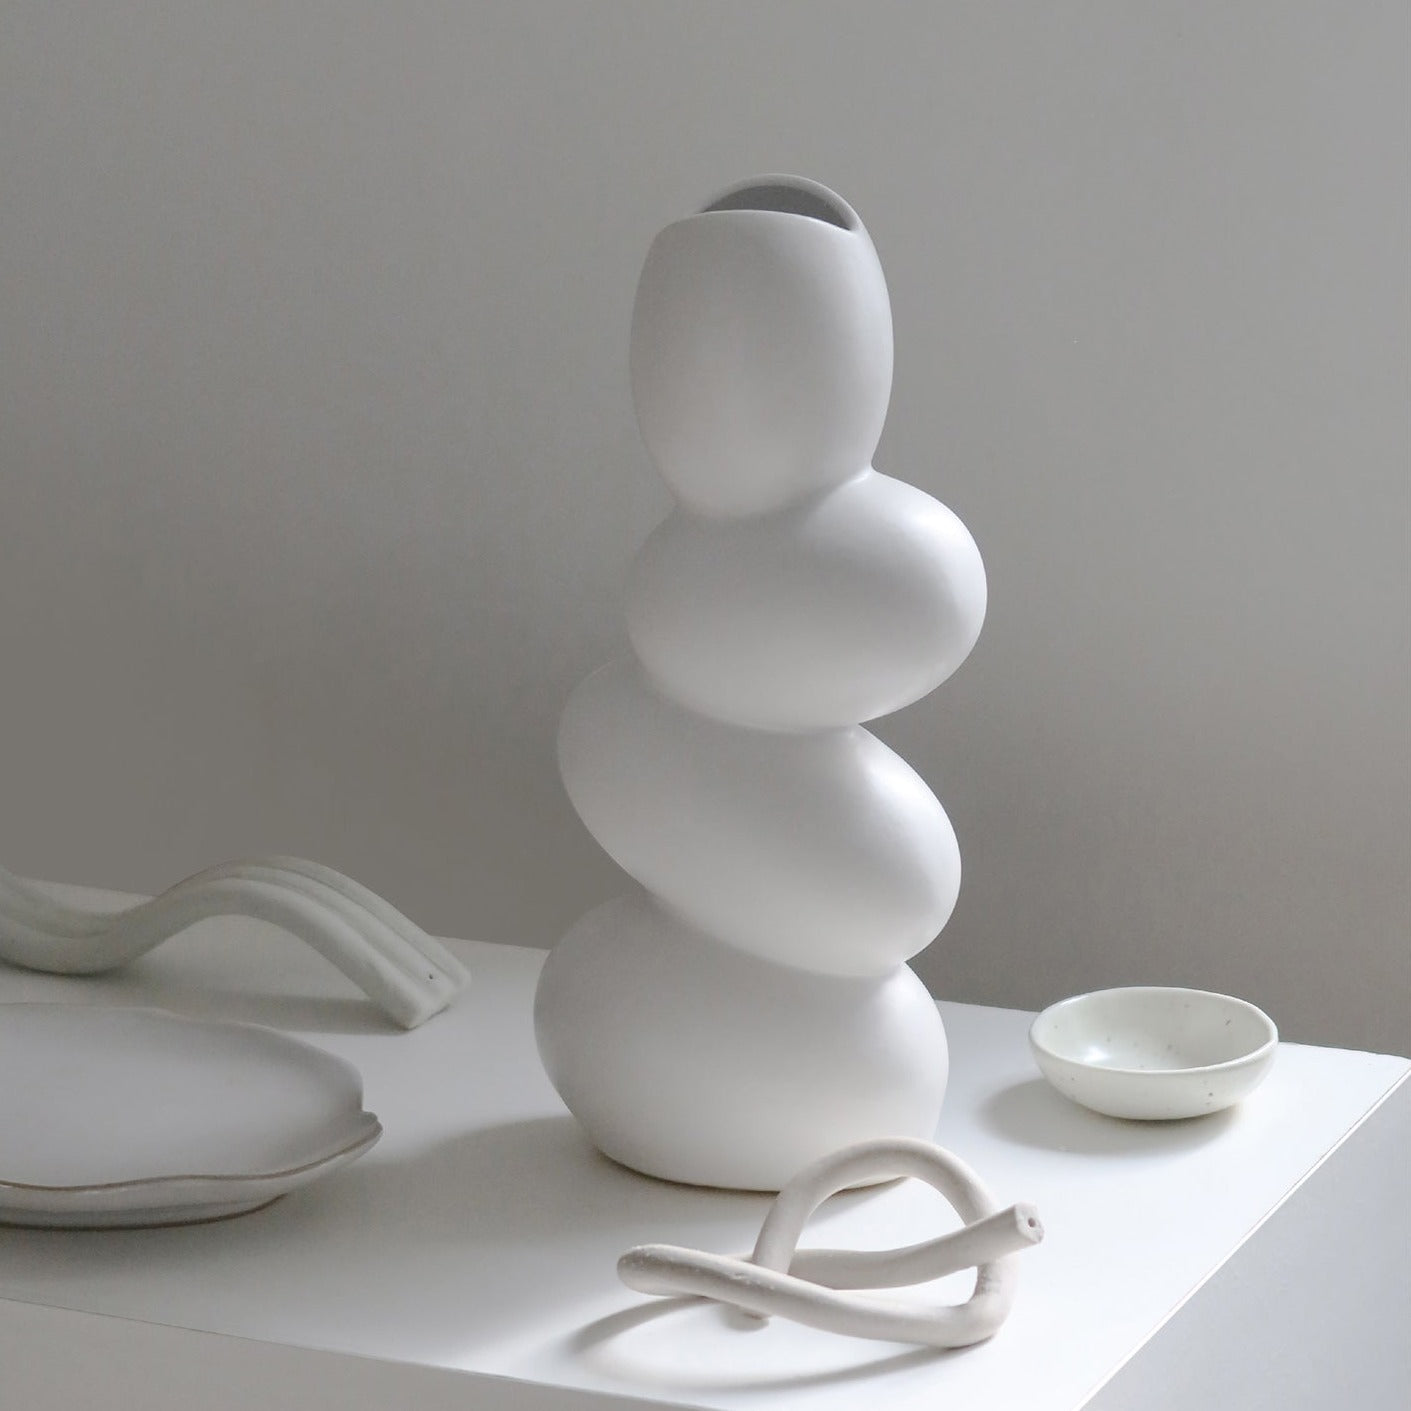 Elegant Matte Ceramic White Egg Shaped Vase